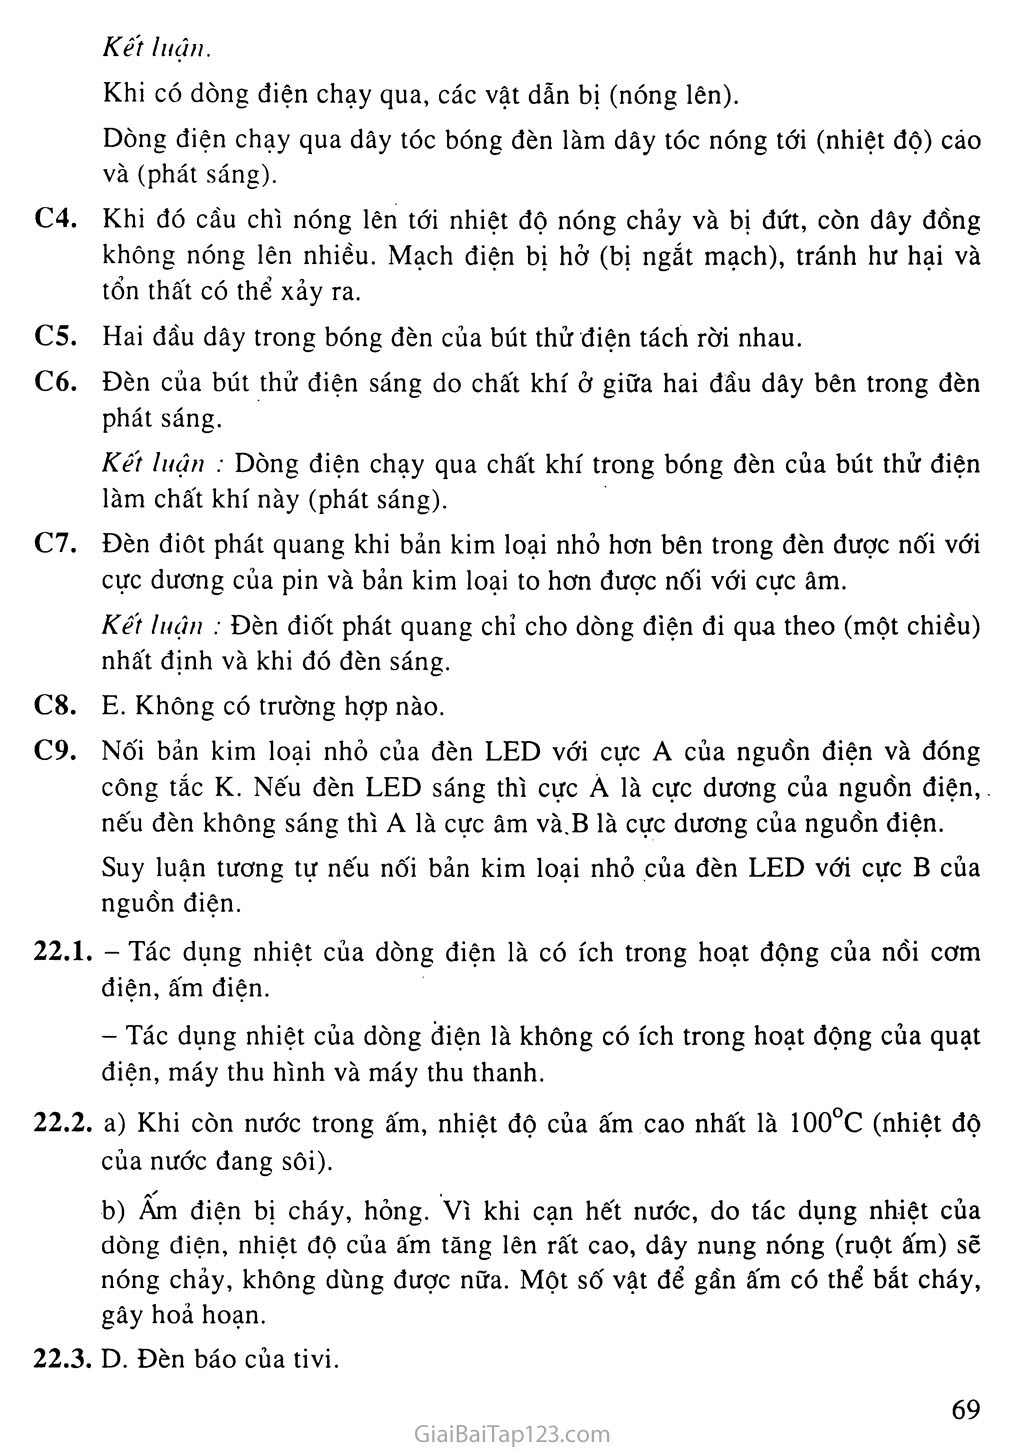 Bài 22: Tác dụng nhiệt và tác dụng phát sáng của dòng điện trang 2